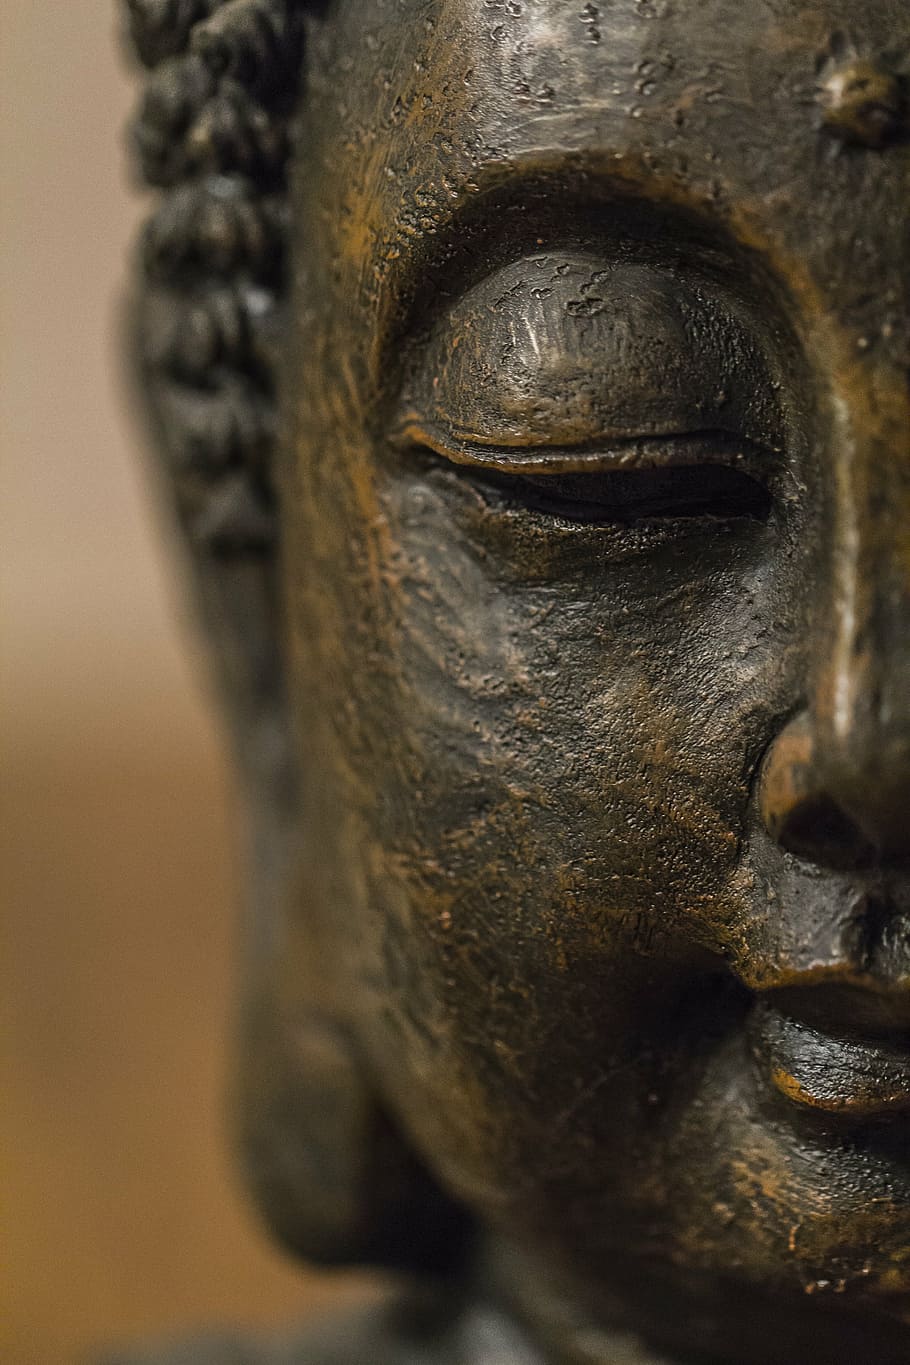 estatuilla de la cabeza de buda, buda, estatua, budismo, religión, asia, budista, escultura, meditación, religioso